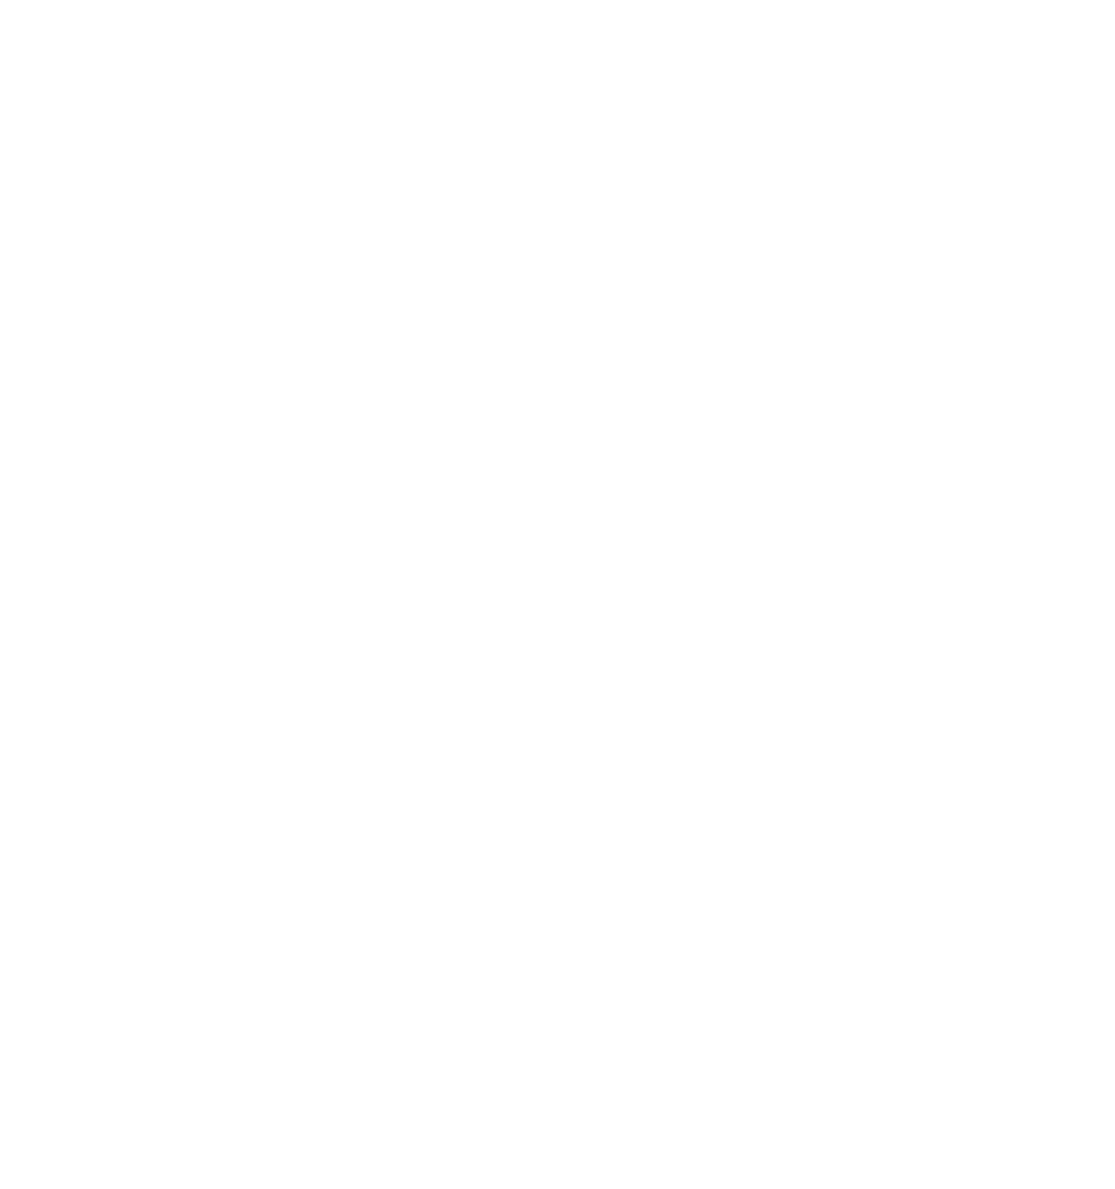 Resnet logo